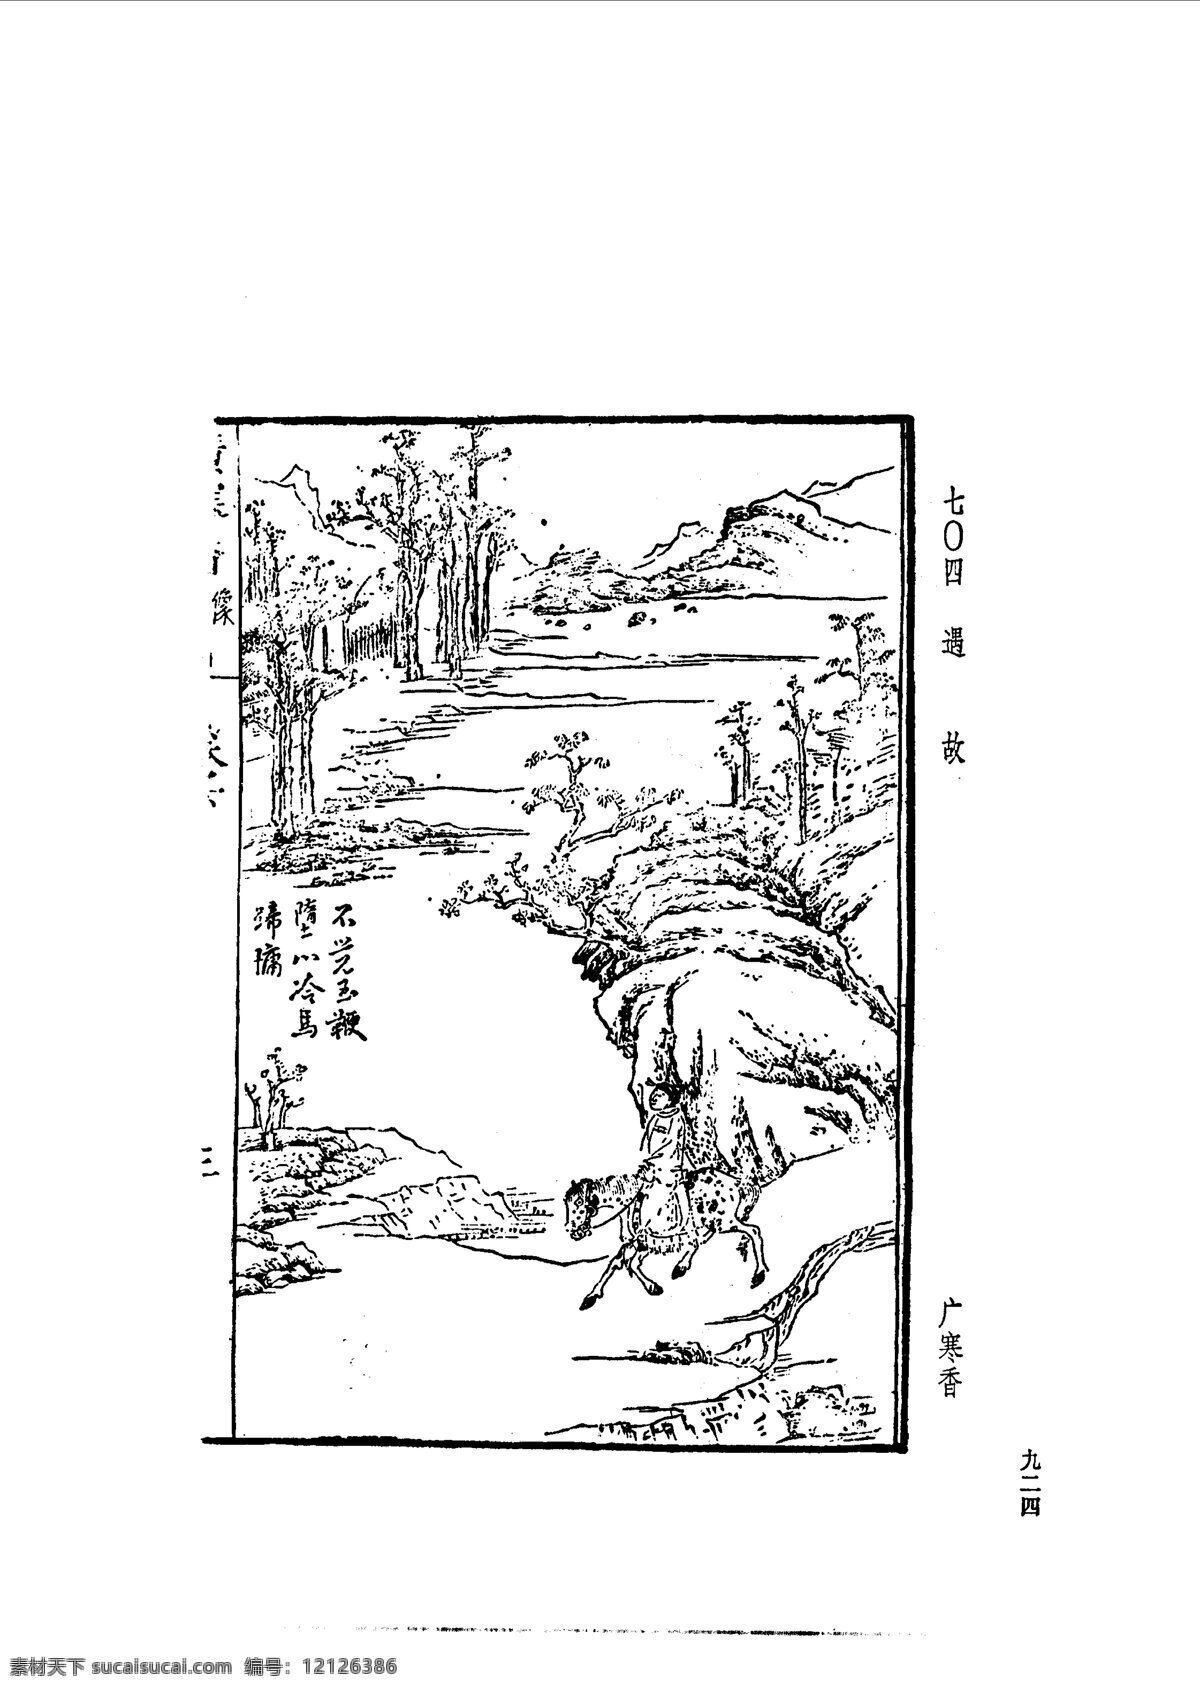 中国 古典文学 版画 选集 上 下册0952 设计素材 版画世界 书画美术 白色